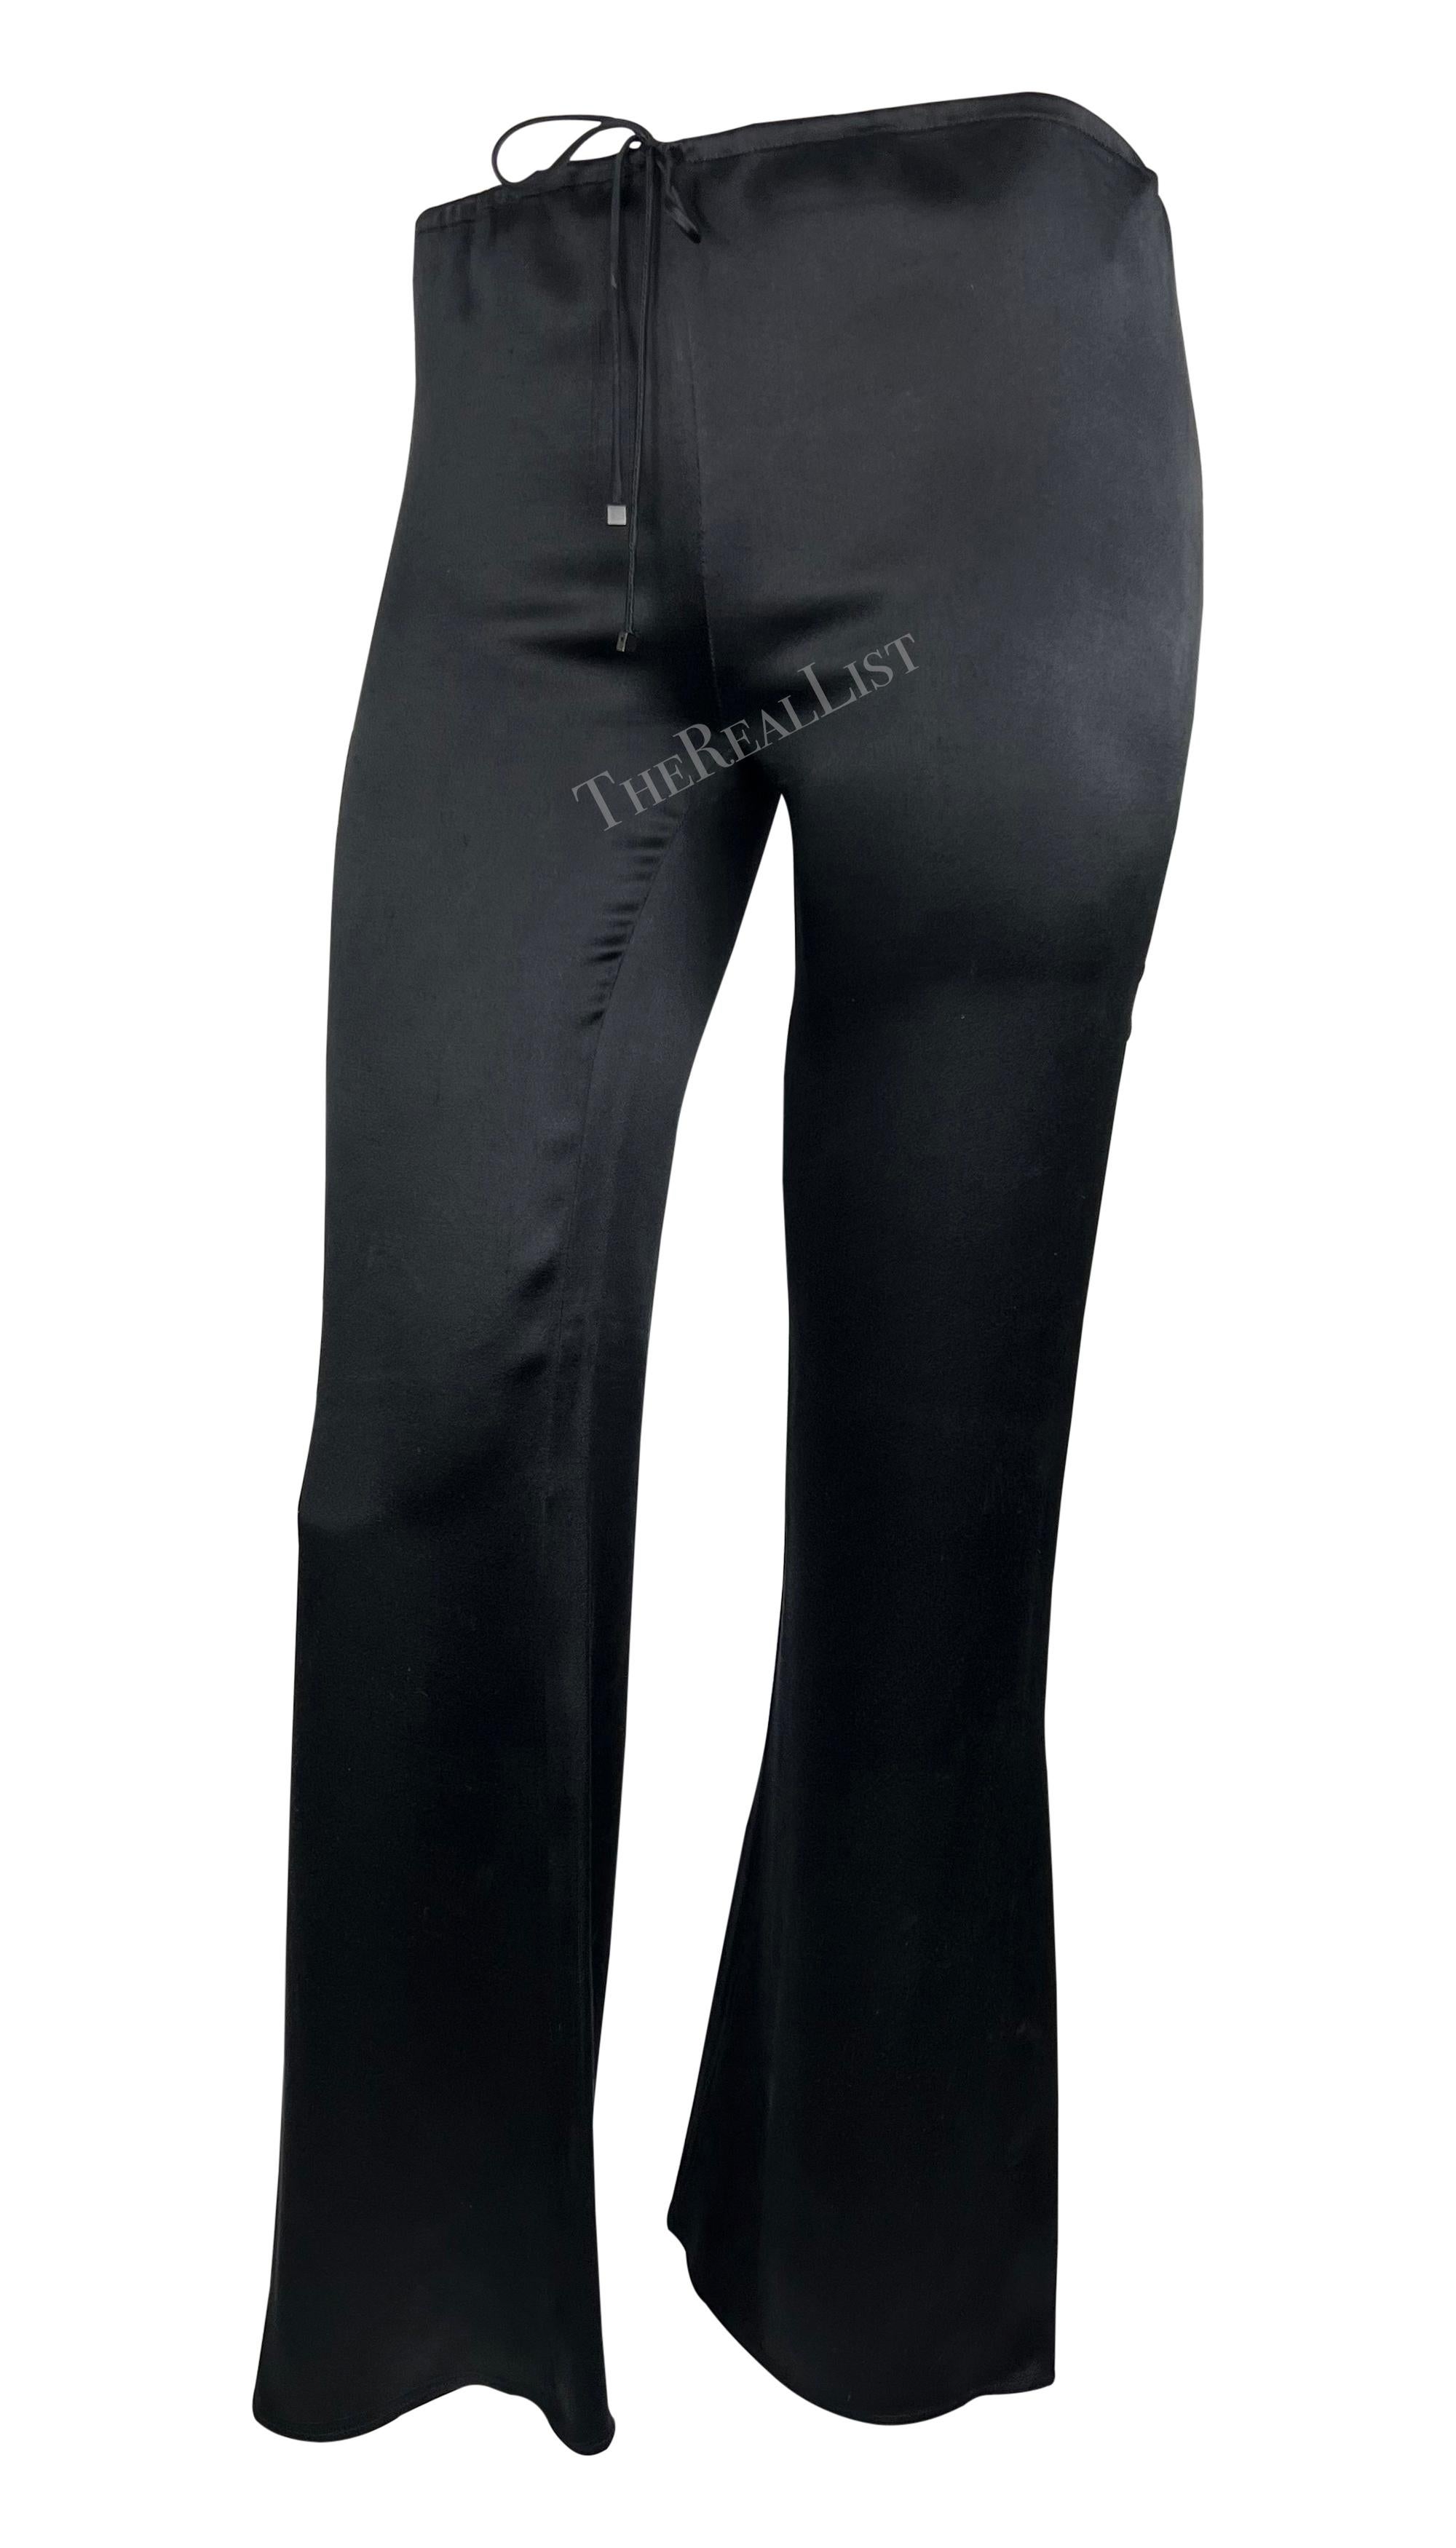 Diese von Tom Ford entworfene Gucci Hose mit Tunnelzug aus weicher schwarzer Seide stammt aus der Cruise 2000 Kollektion. Mit ihrem schmeichelhaften, ausgestellten Schnitt sind sie ein unverzichtbares Accessoire für den gehobenen Anspruch.